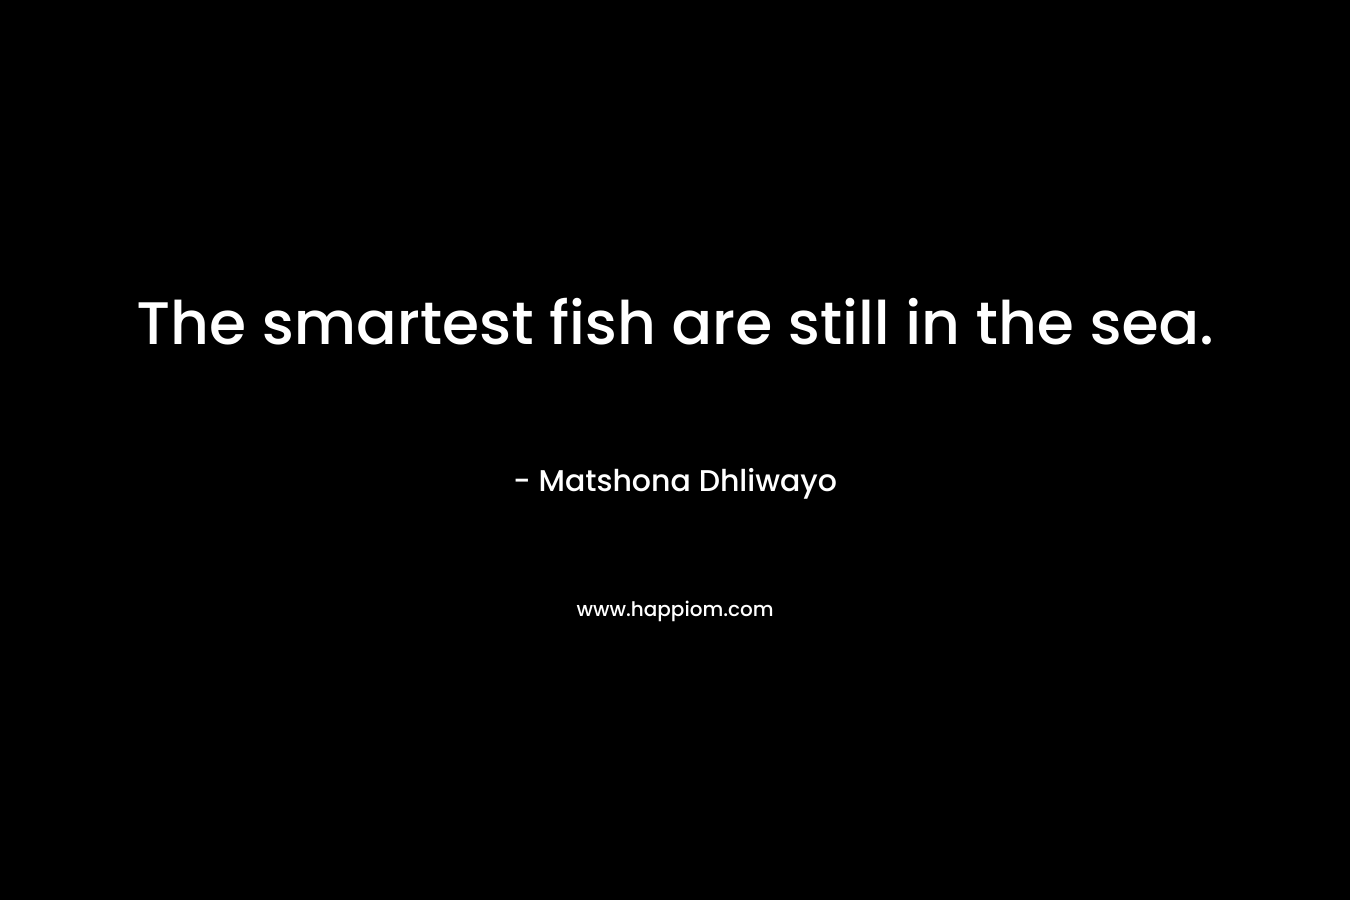 The smartest fish are still in the sea.